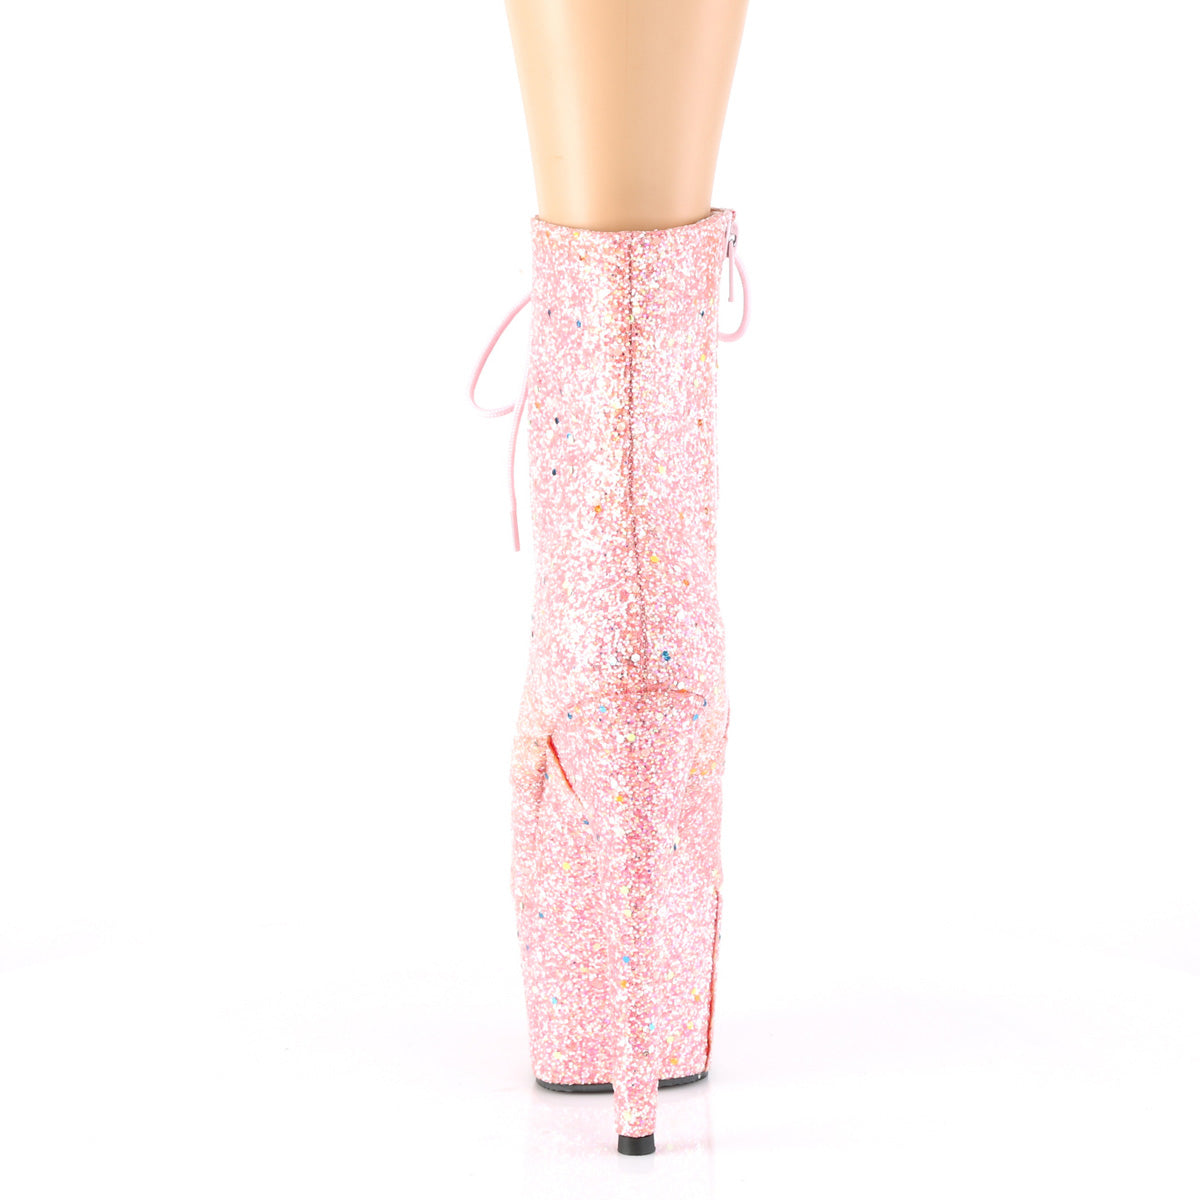 Pleaser Botas de tobillo para mujer ADORE-1020gdlg rosa múltiples brillo / rosa múltiples brillo